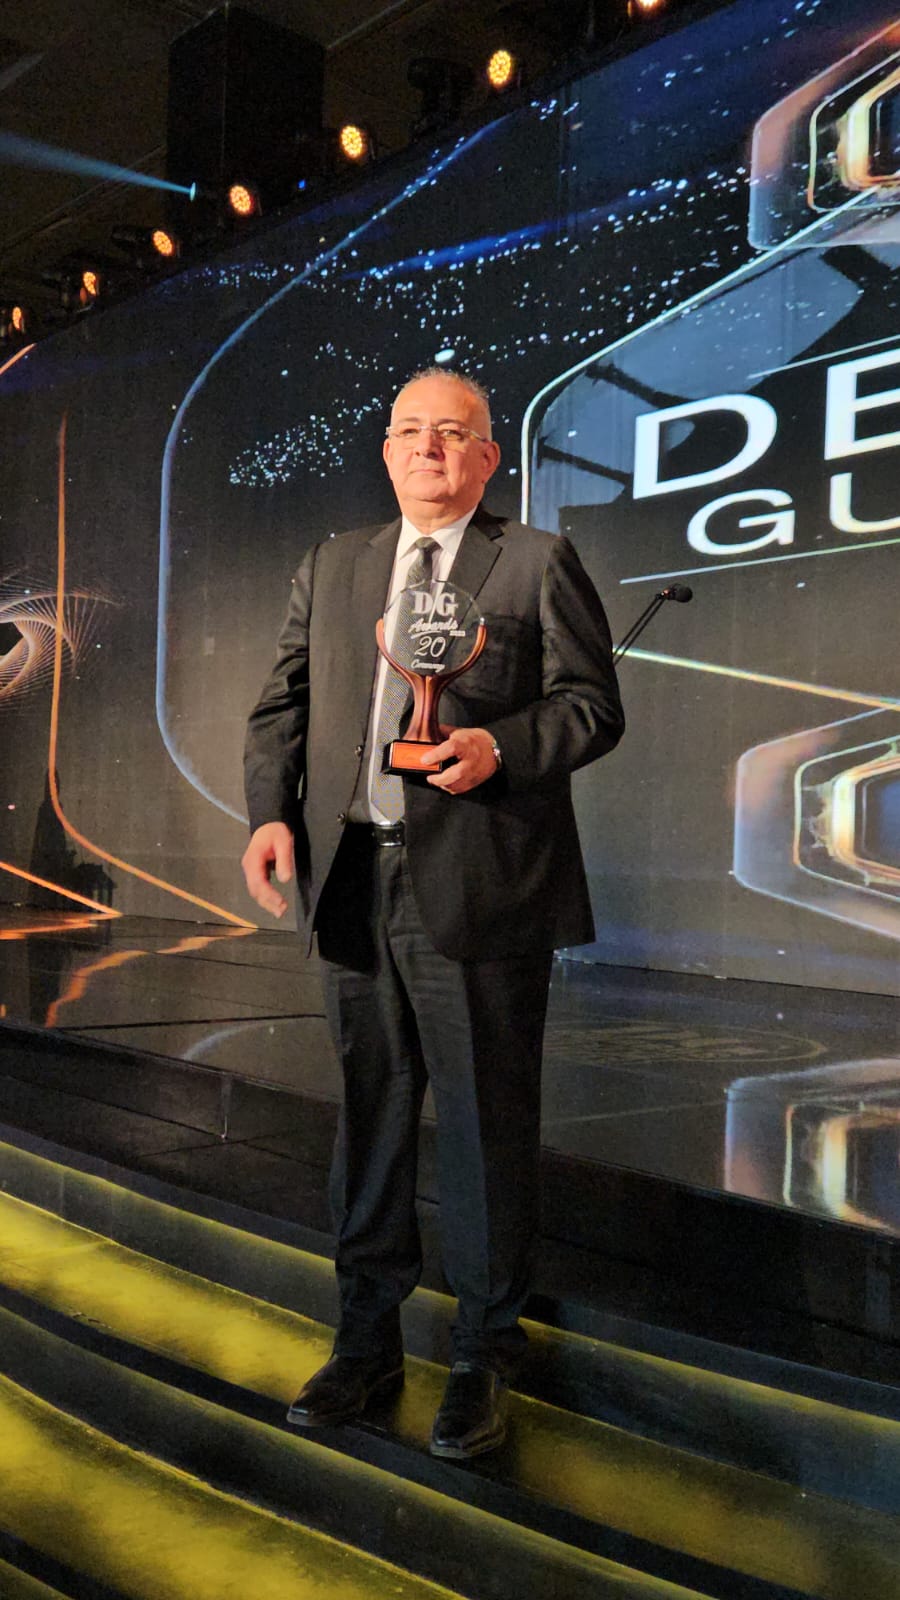 المهندس حسام صالح يتسلم جائزة أفضل قنوات اكسترا نيوز وسي بي سي دراما من دير جيست (3)